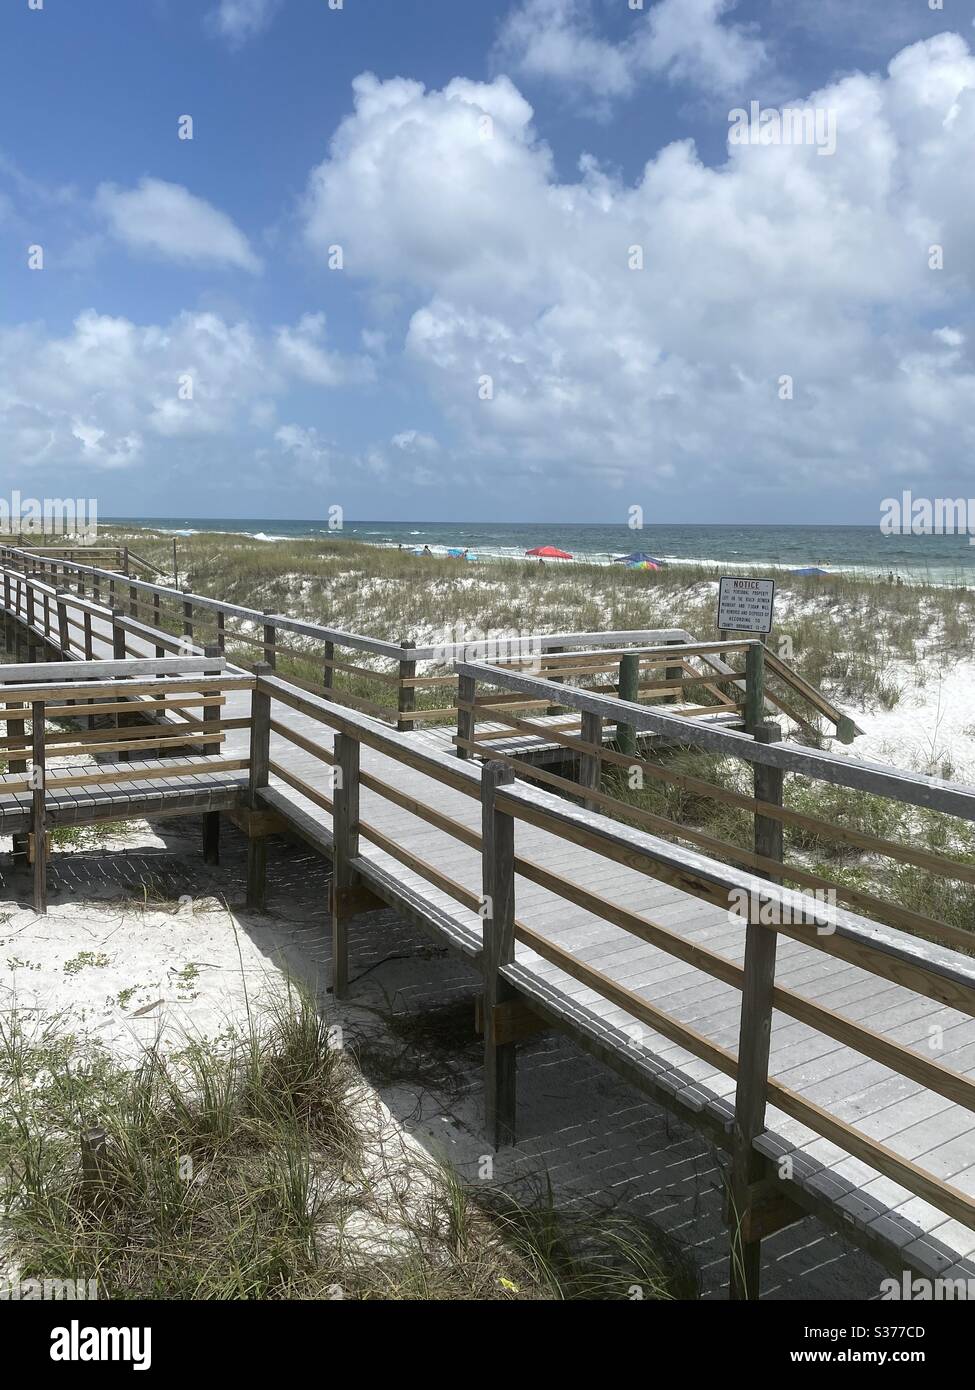 Vista superior de la pasarela de madera que conduce a la playa de arena blanca en la Costa Esmeralda Florida Foto de stock